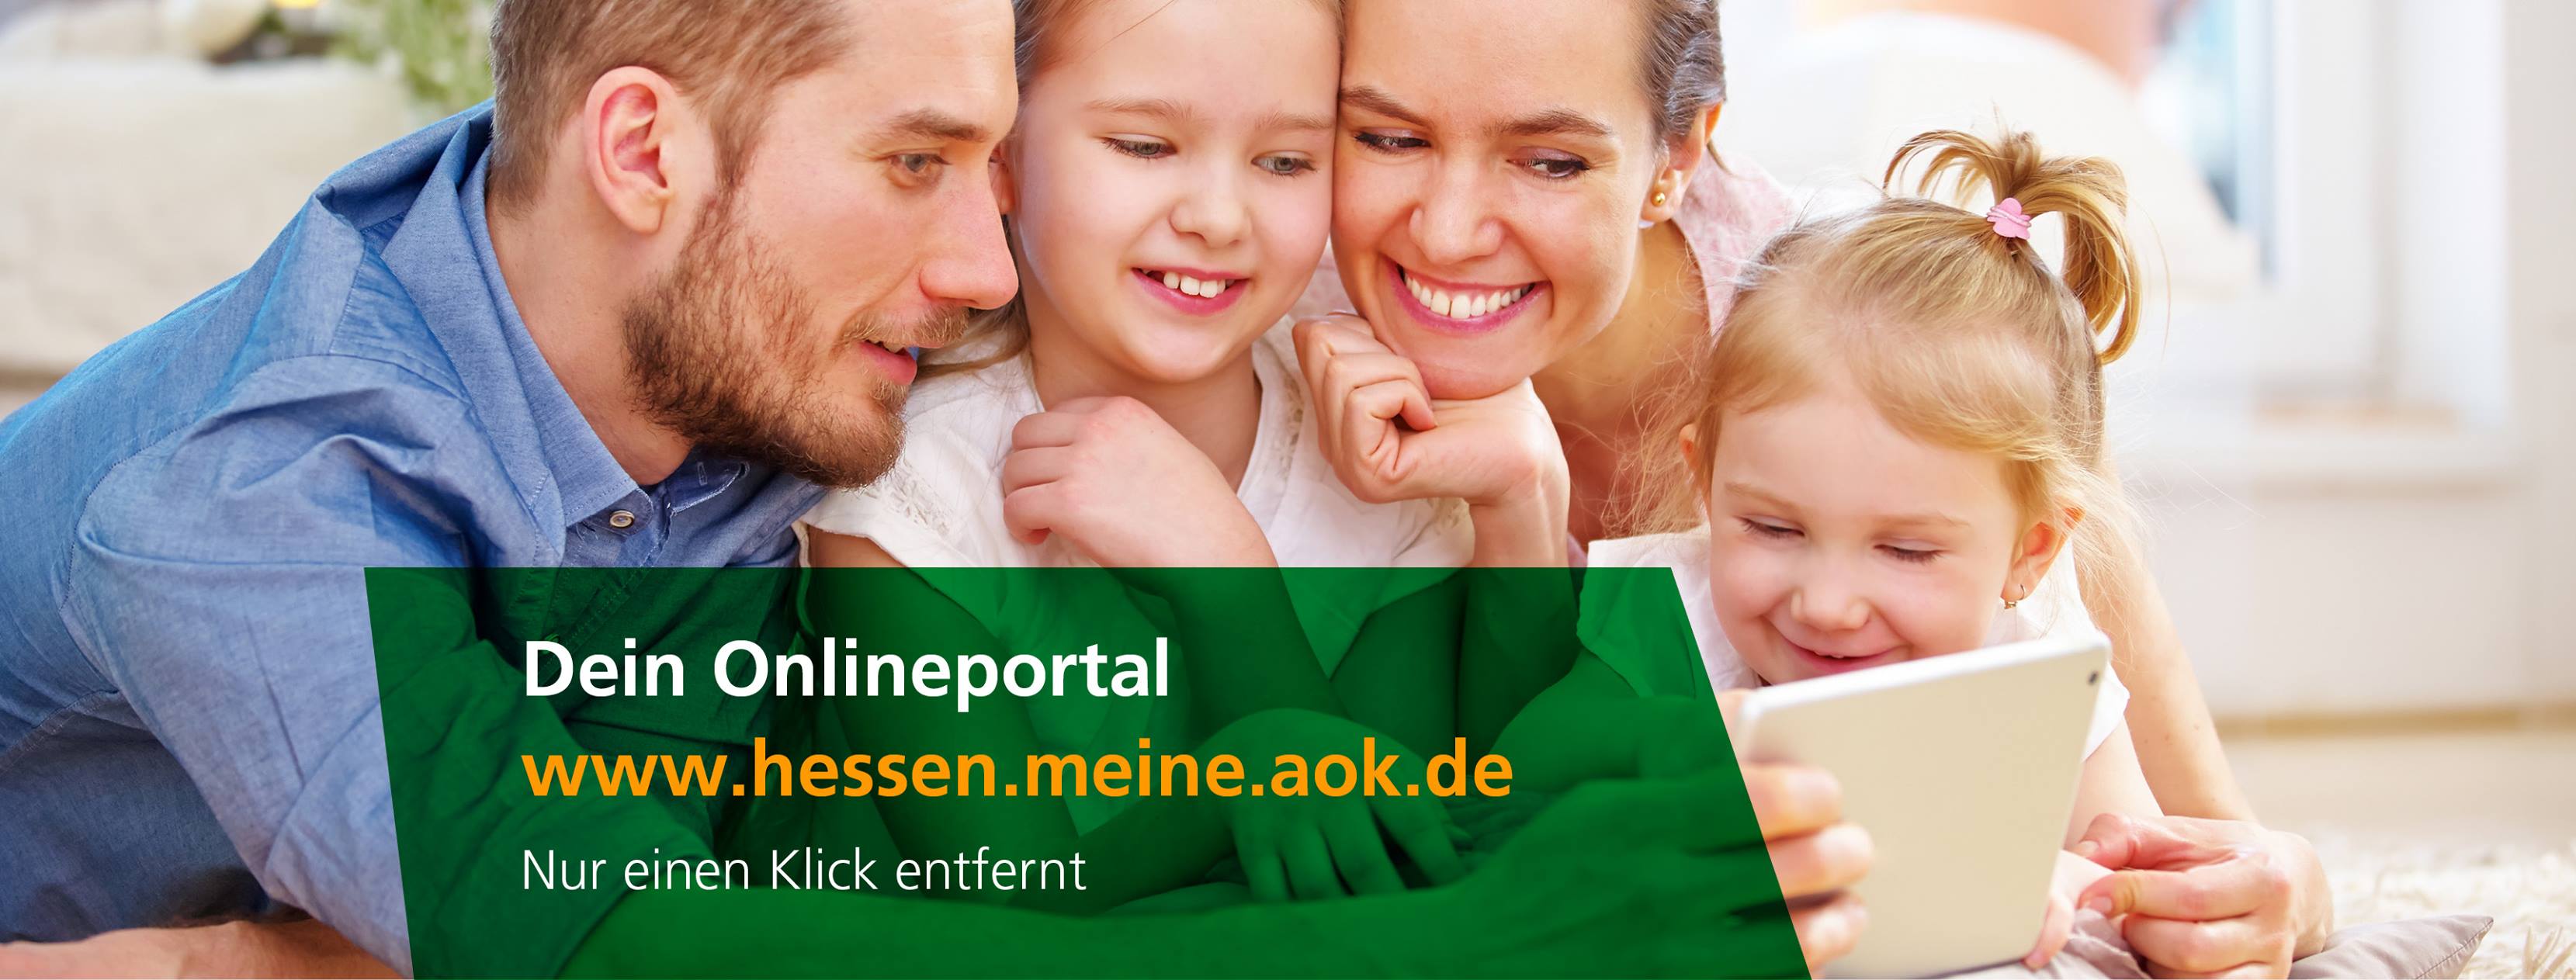 Kundenbild groß 4 AOK - Die Gesundheitskasse in Hessen - Direktion - Kundencenter